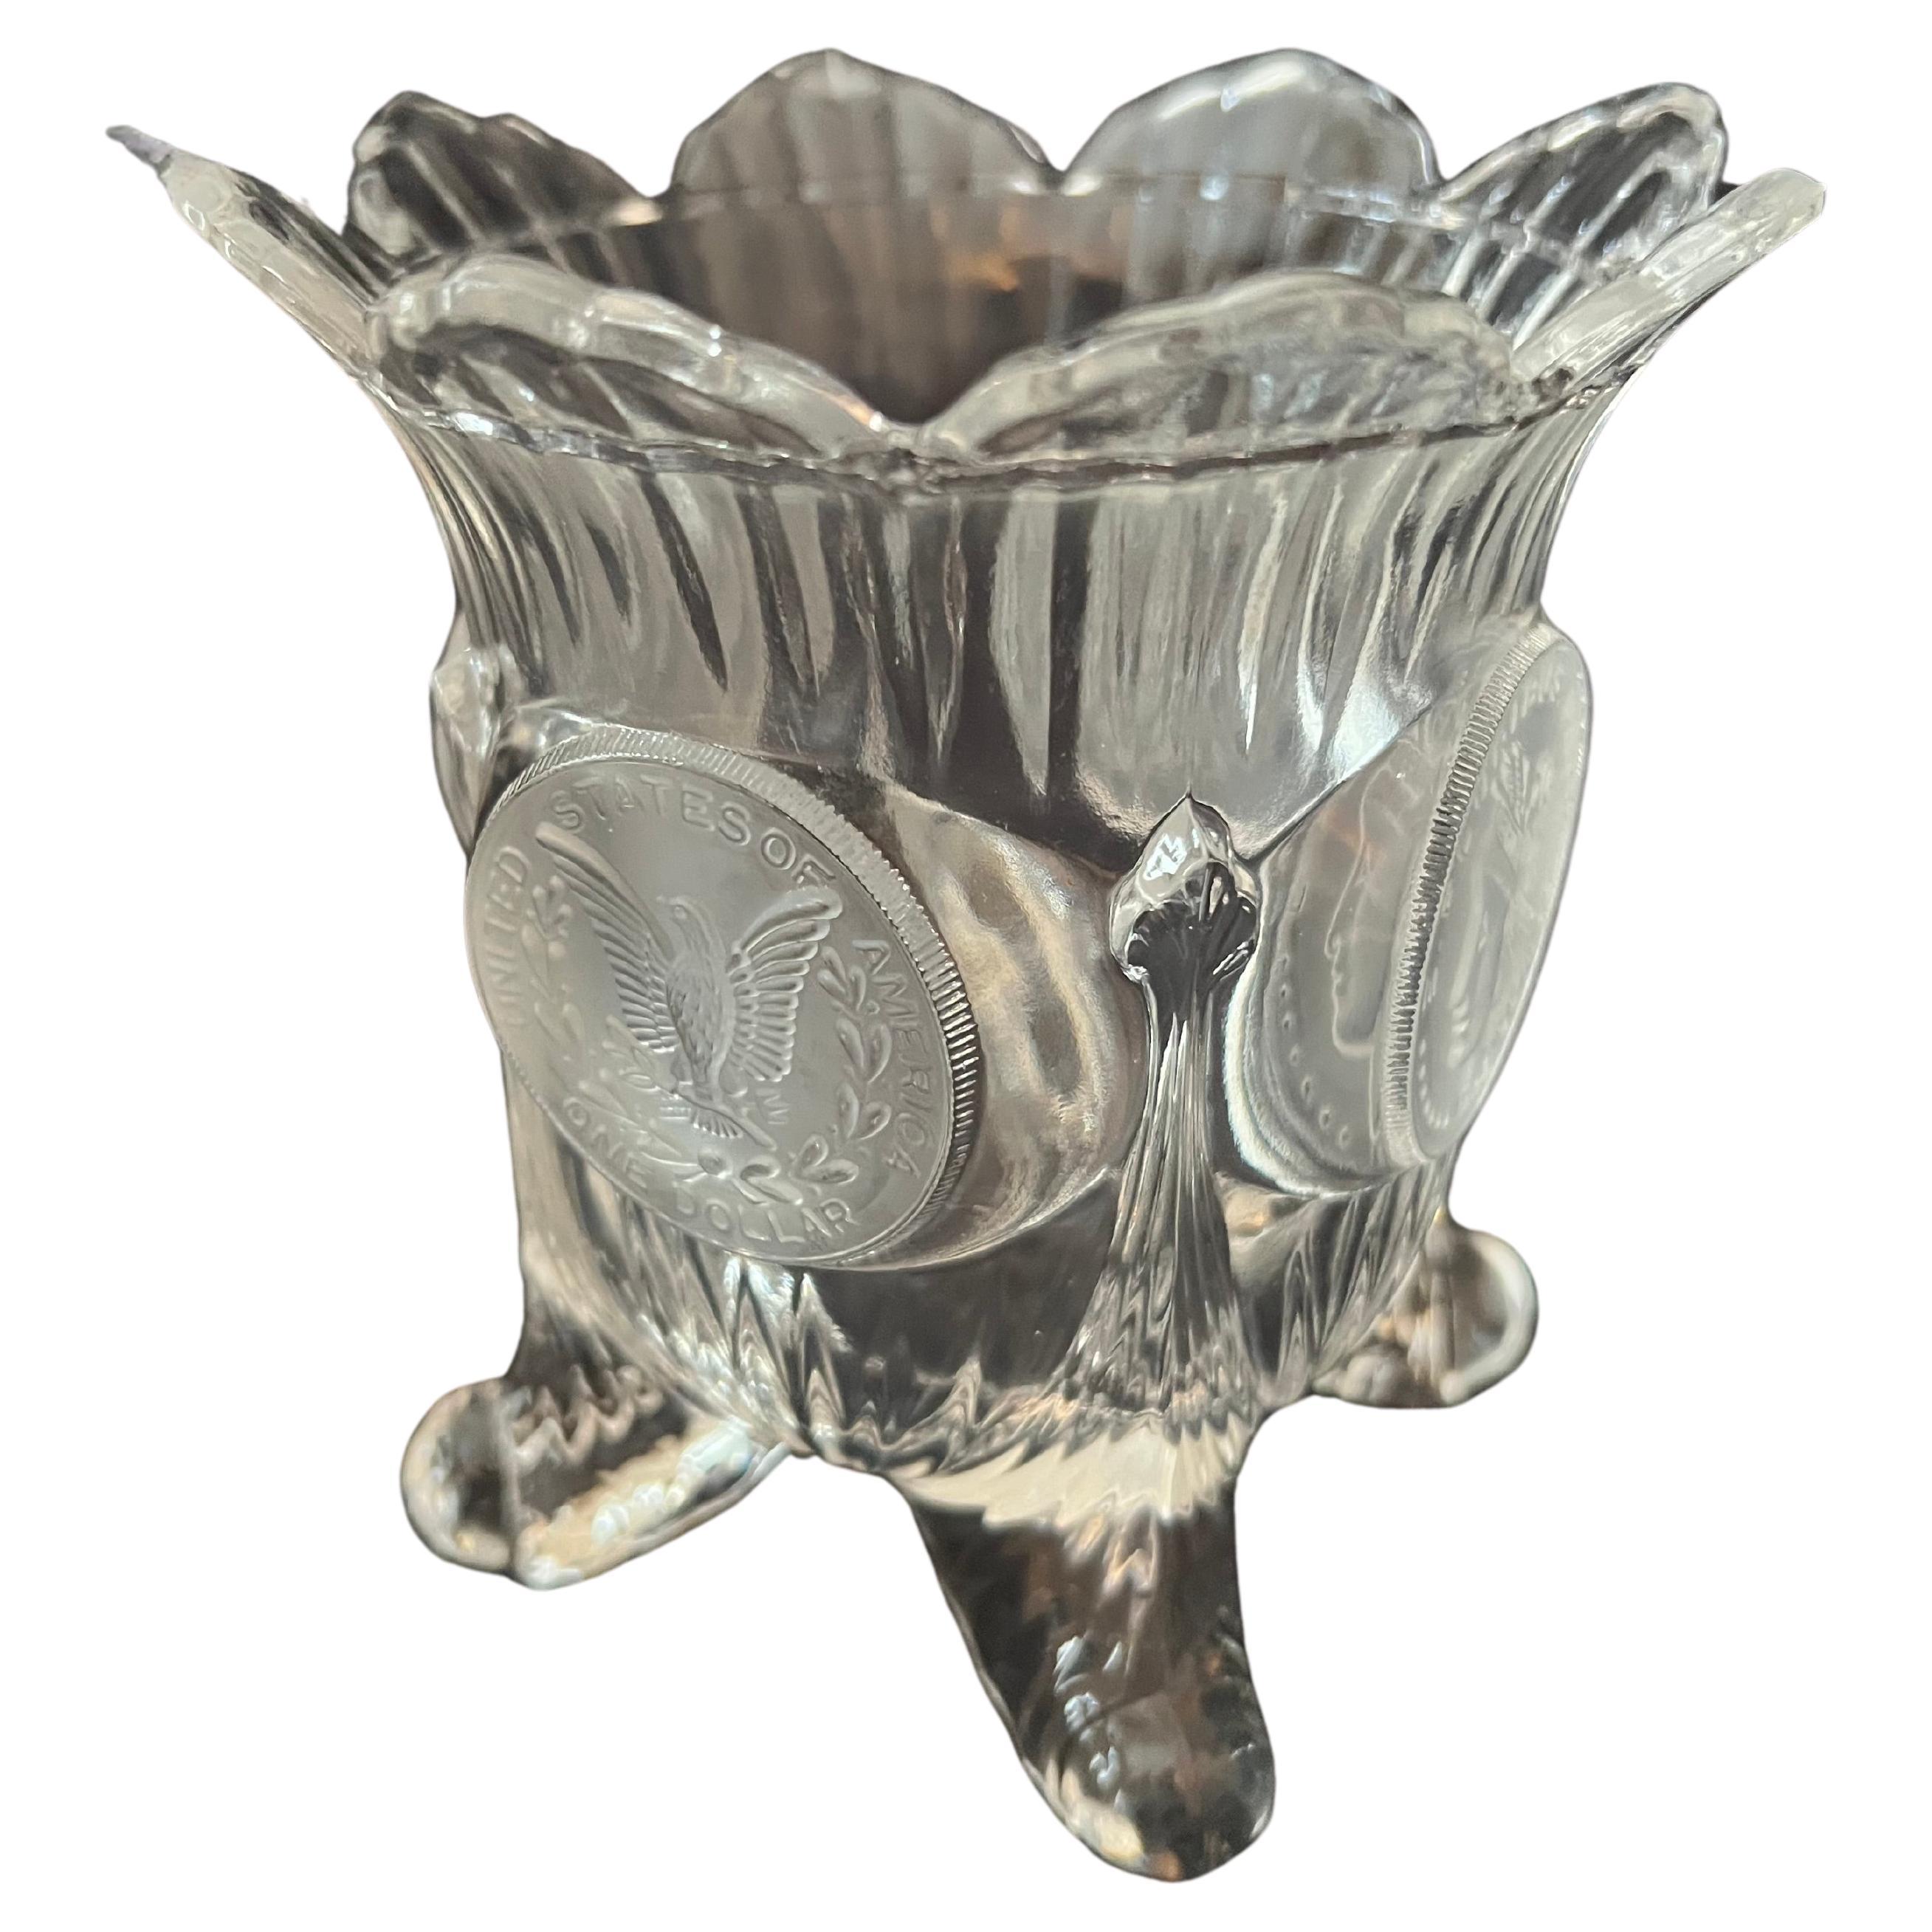 Vase aus Glasglas mit vier Beinen, Wellenschliffplatte und mattierten Medaillons